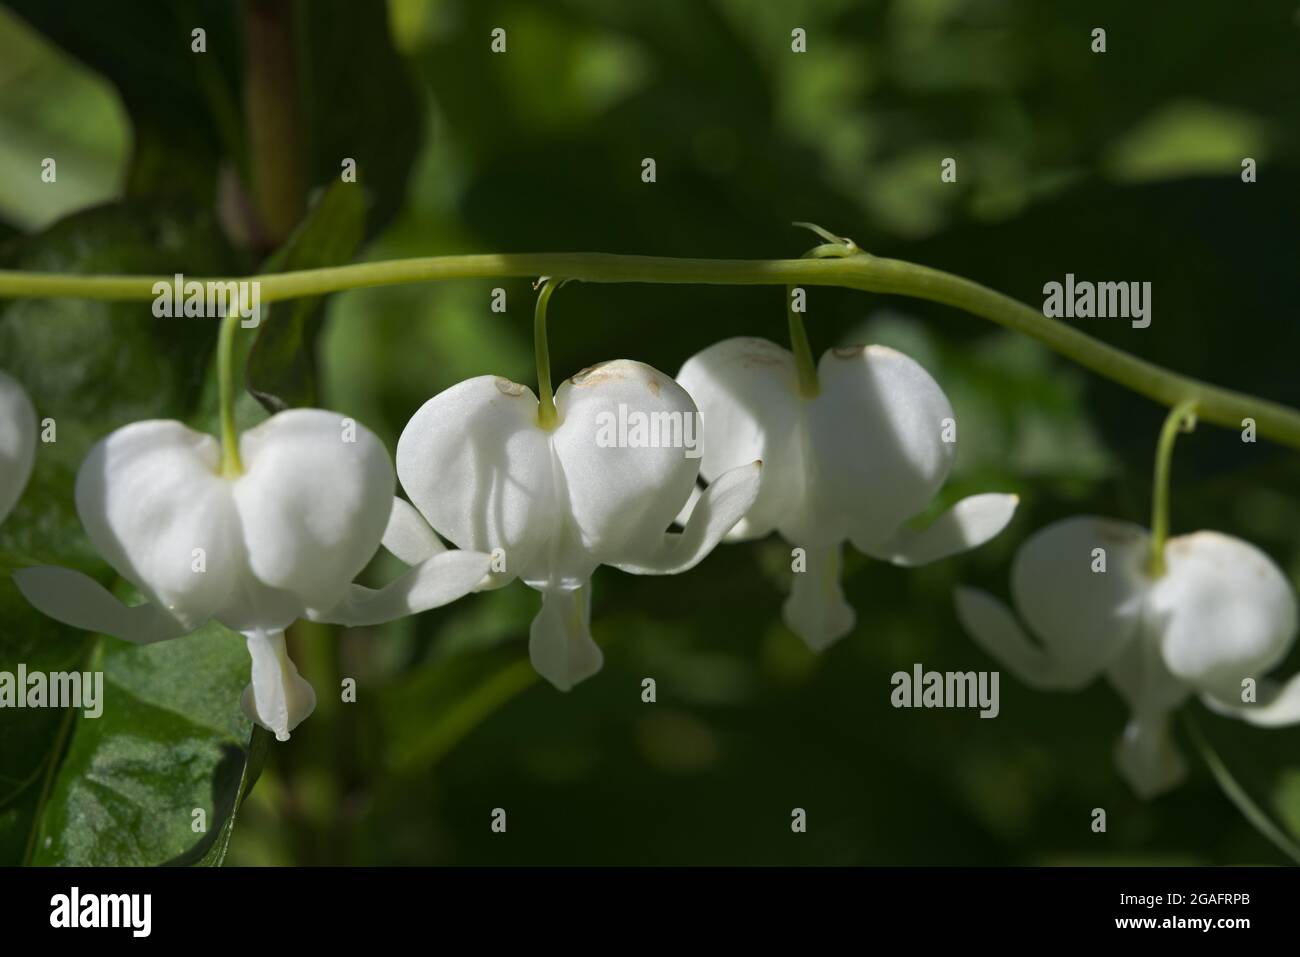 Horizontale Linie von weißen herzförmigen Blüten. Hängt vom Pflanzenstamm, besser bekannt als asiatisches Blutungsherz. Romantisch oder Liebe Thema auf das Bild Stockfoto